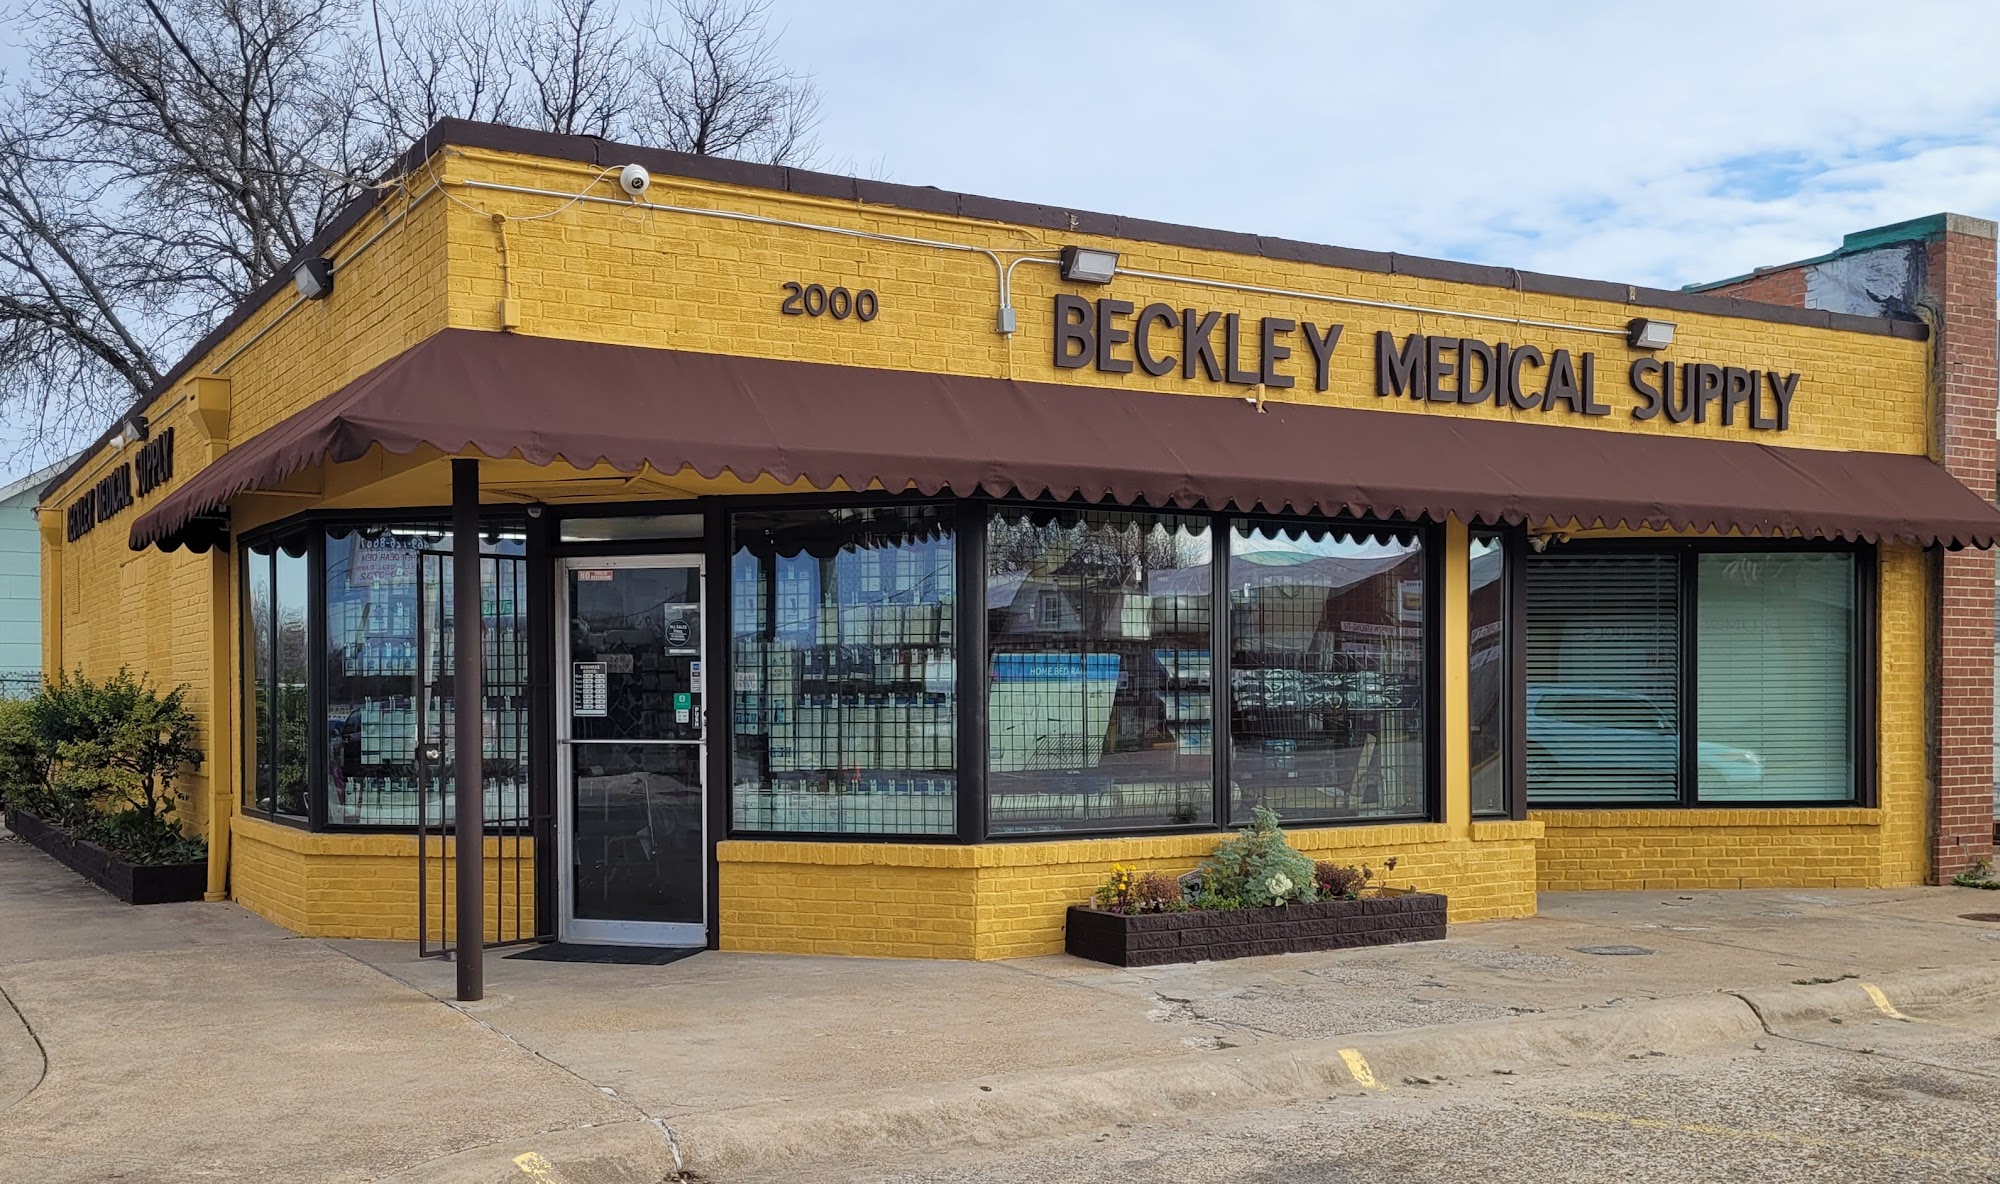 Beckley Medical Supply